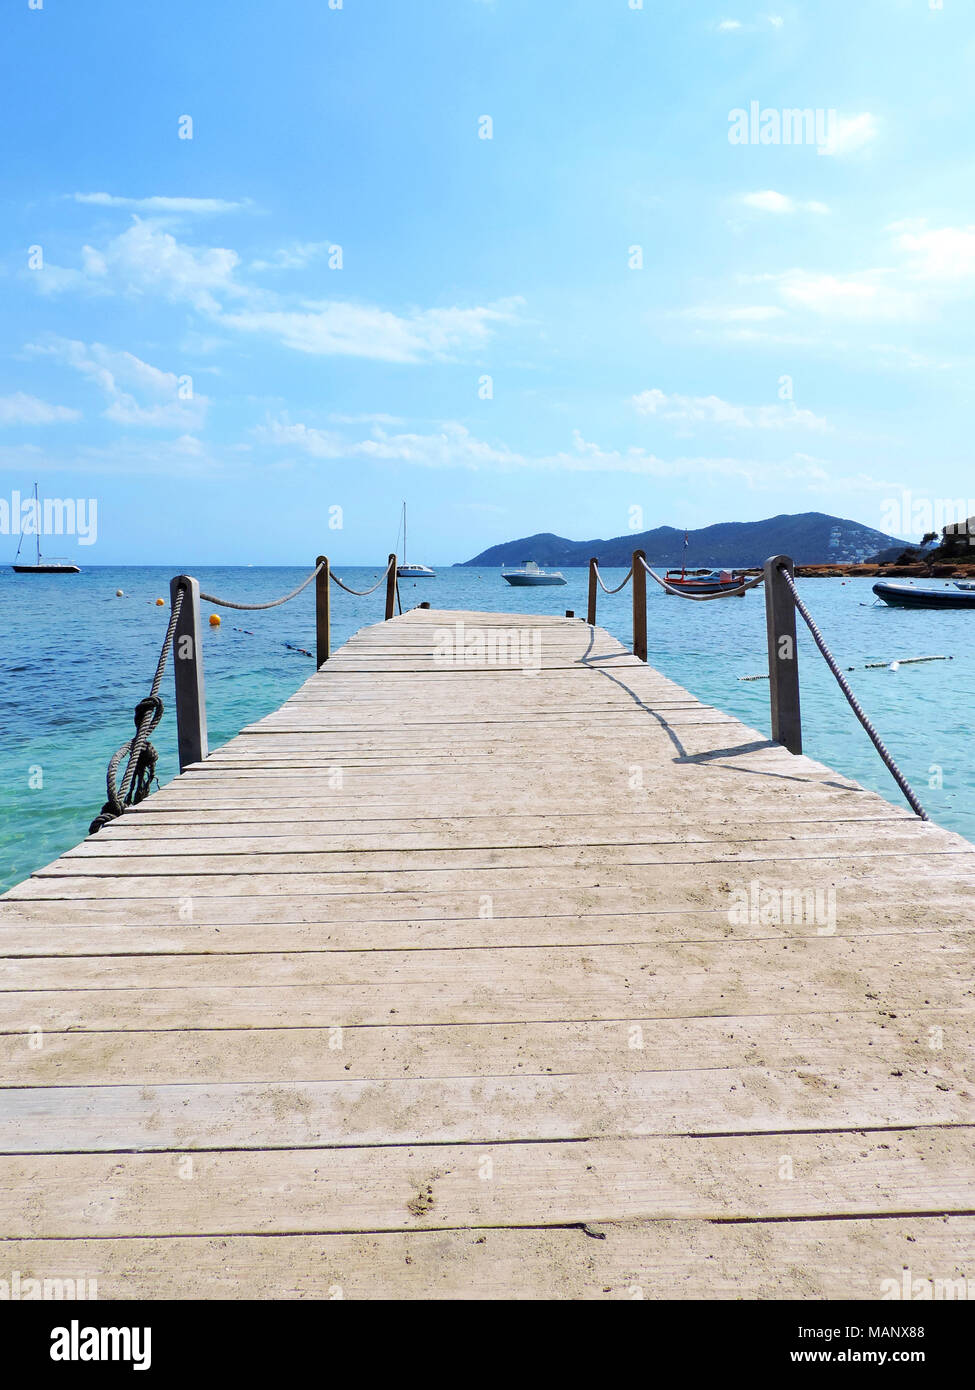 Holzbrücke oder Pier im Meer. Türkisfarbenes Wasser und idyllische Jetty. Stockfoto